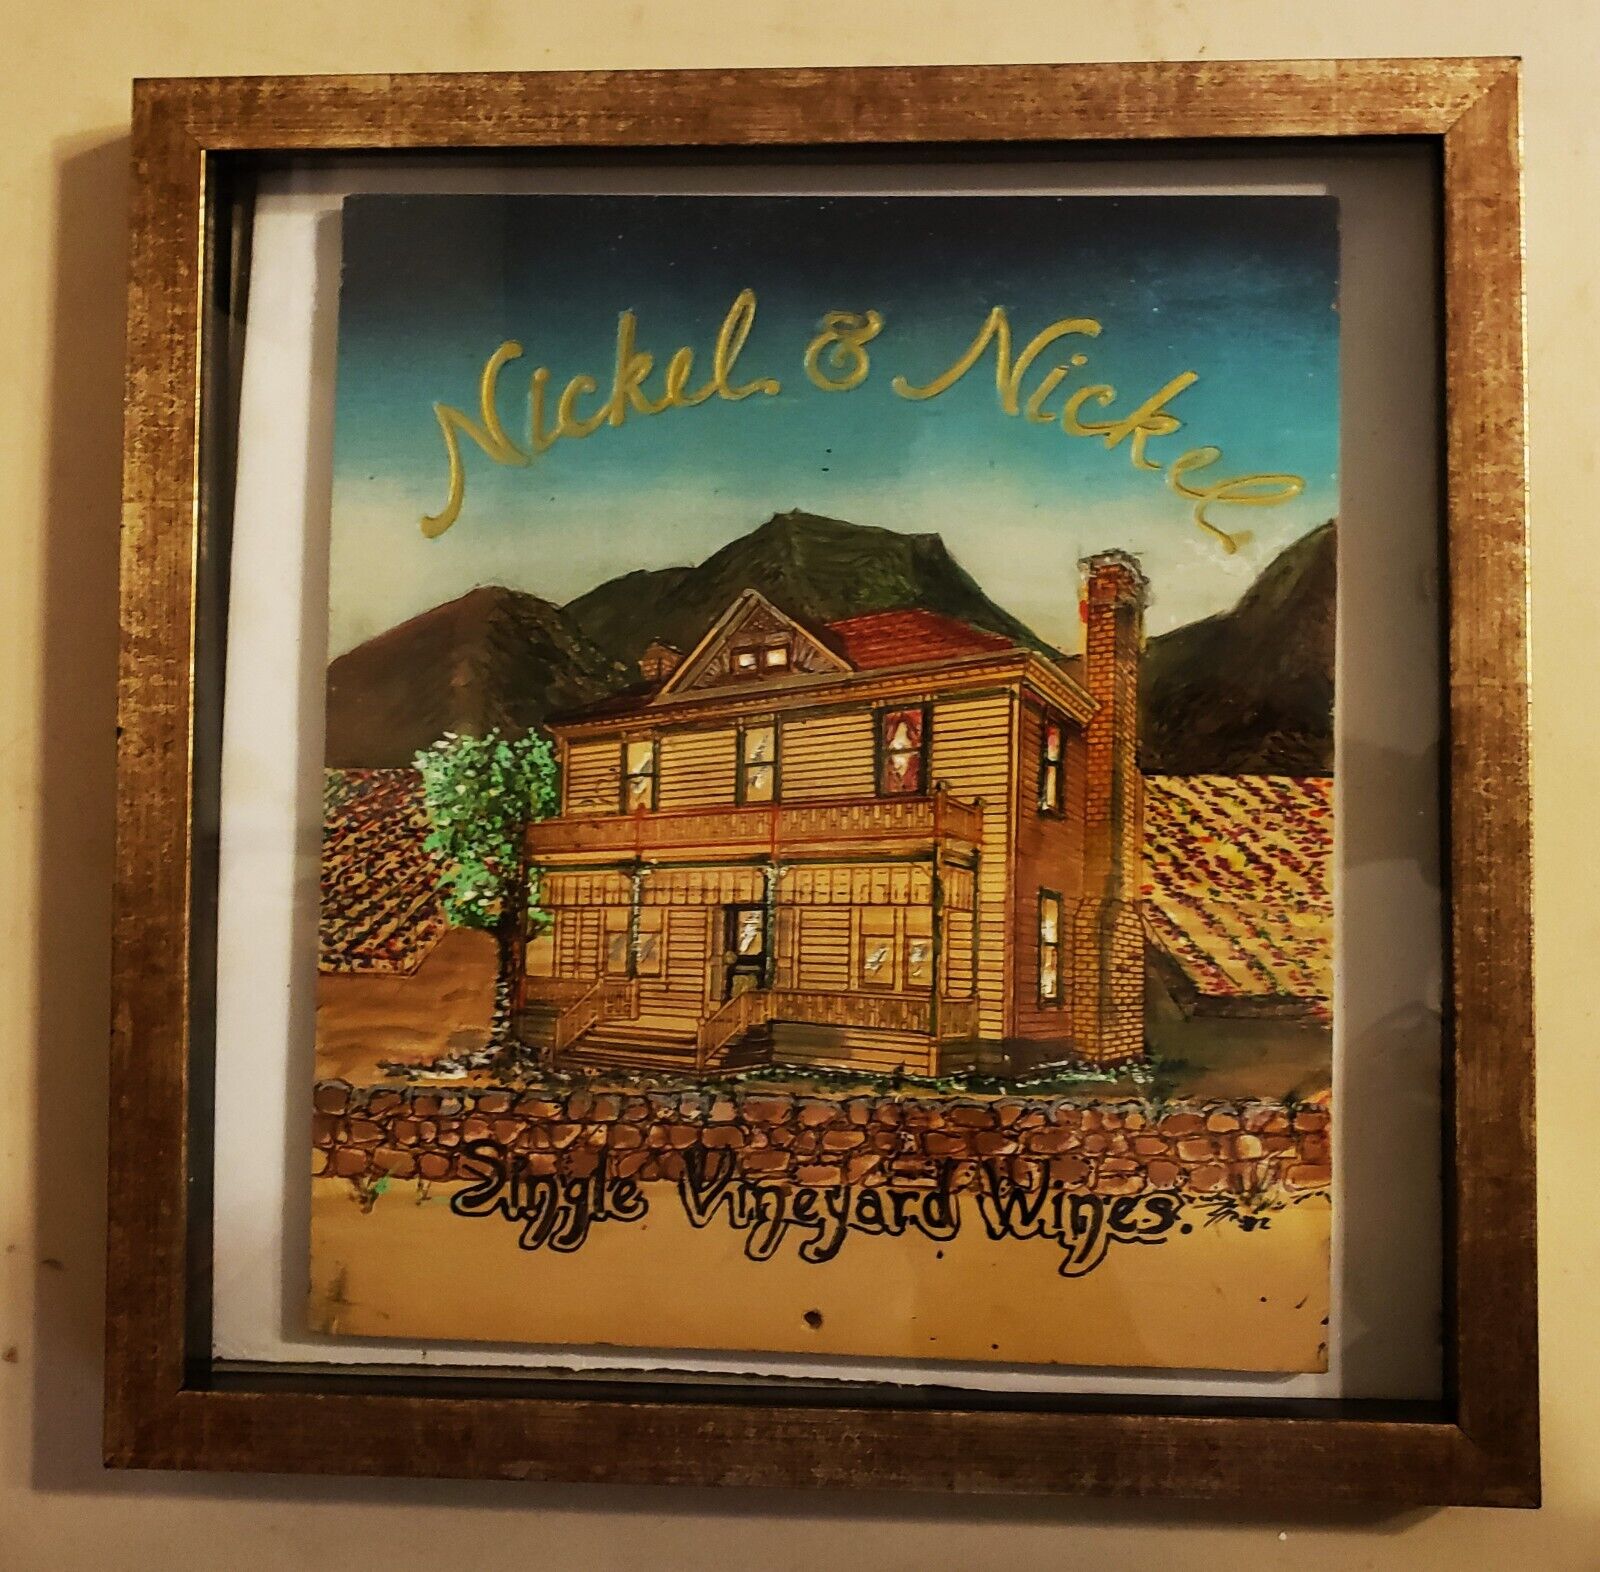 NICKEL & NICKEL Single Vineyard Wines Original Carved & Painted Wall Art Plaque